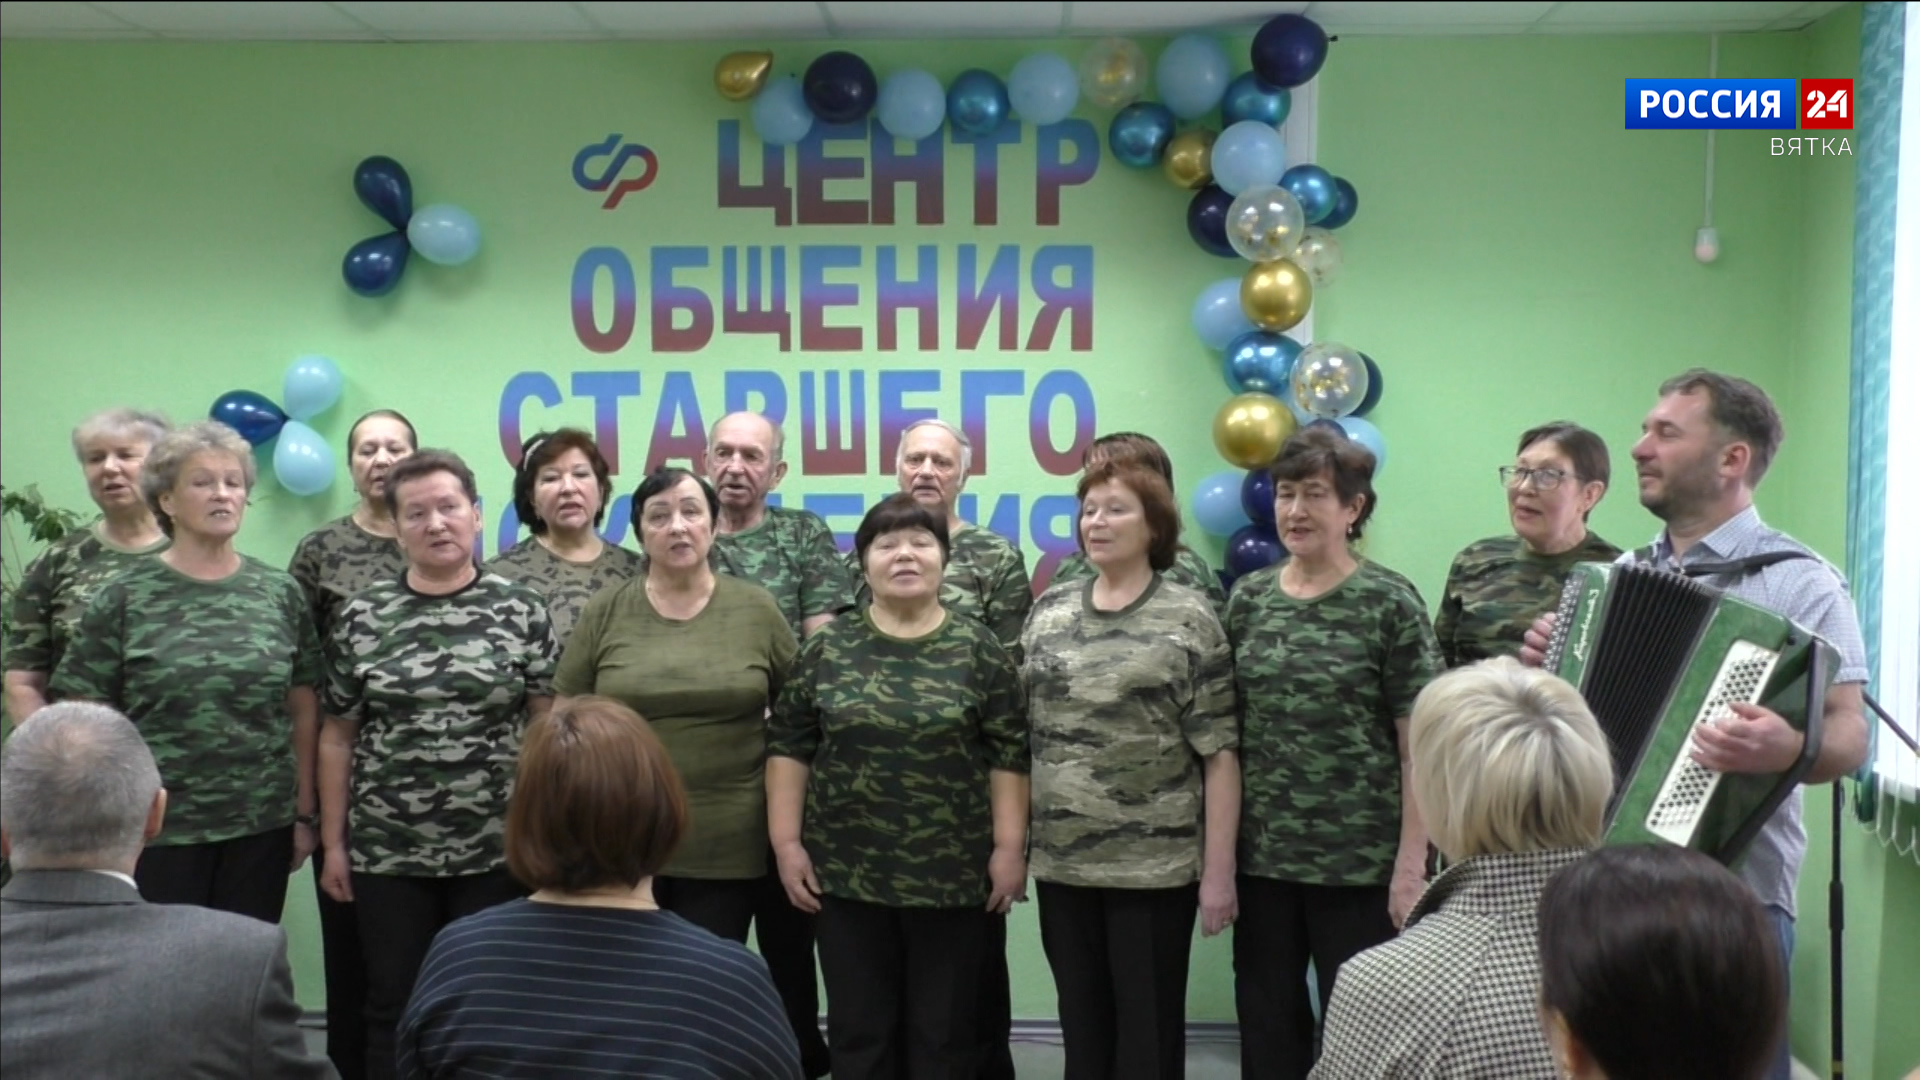 В Унинском районе Кировской области открылся Центр общения старшего поколения